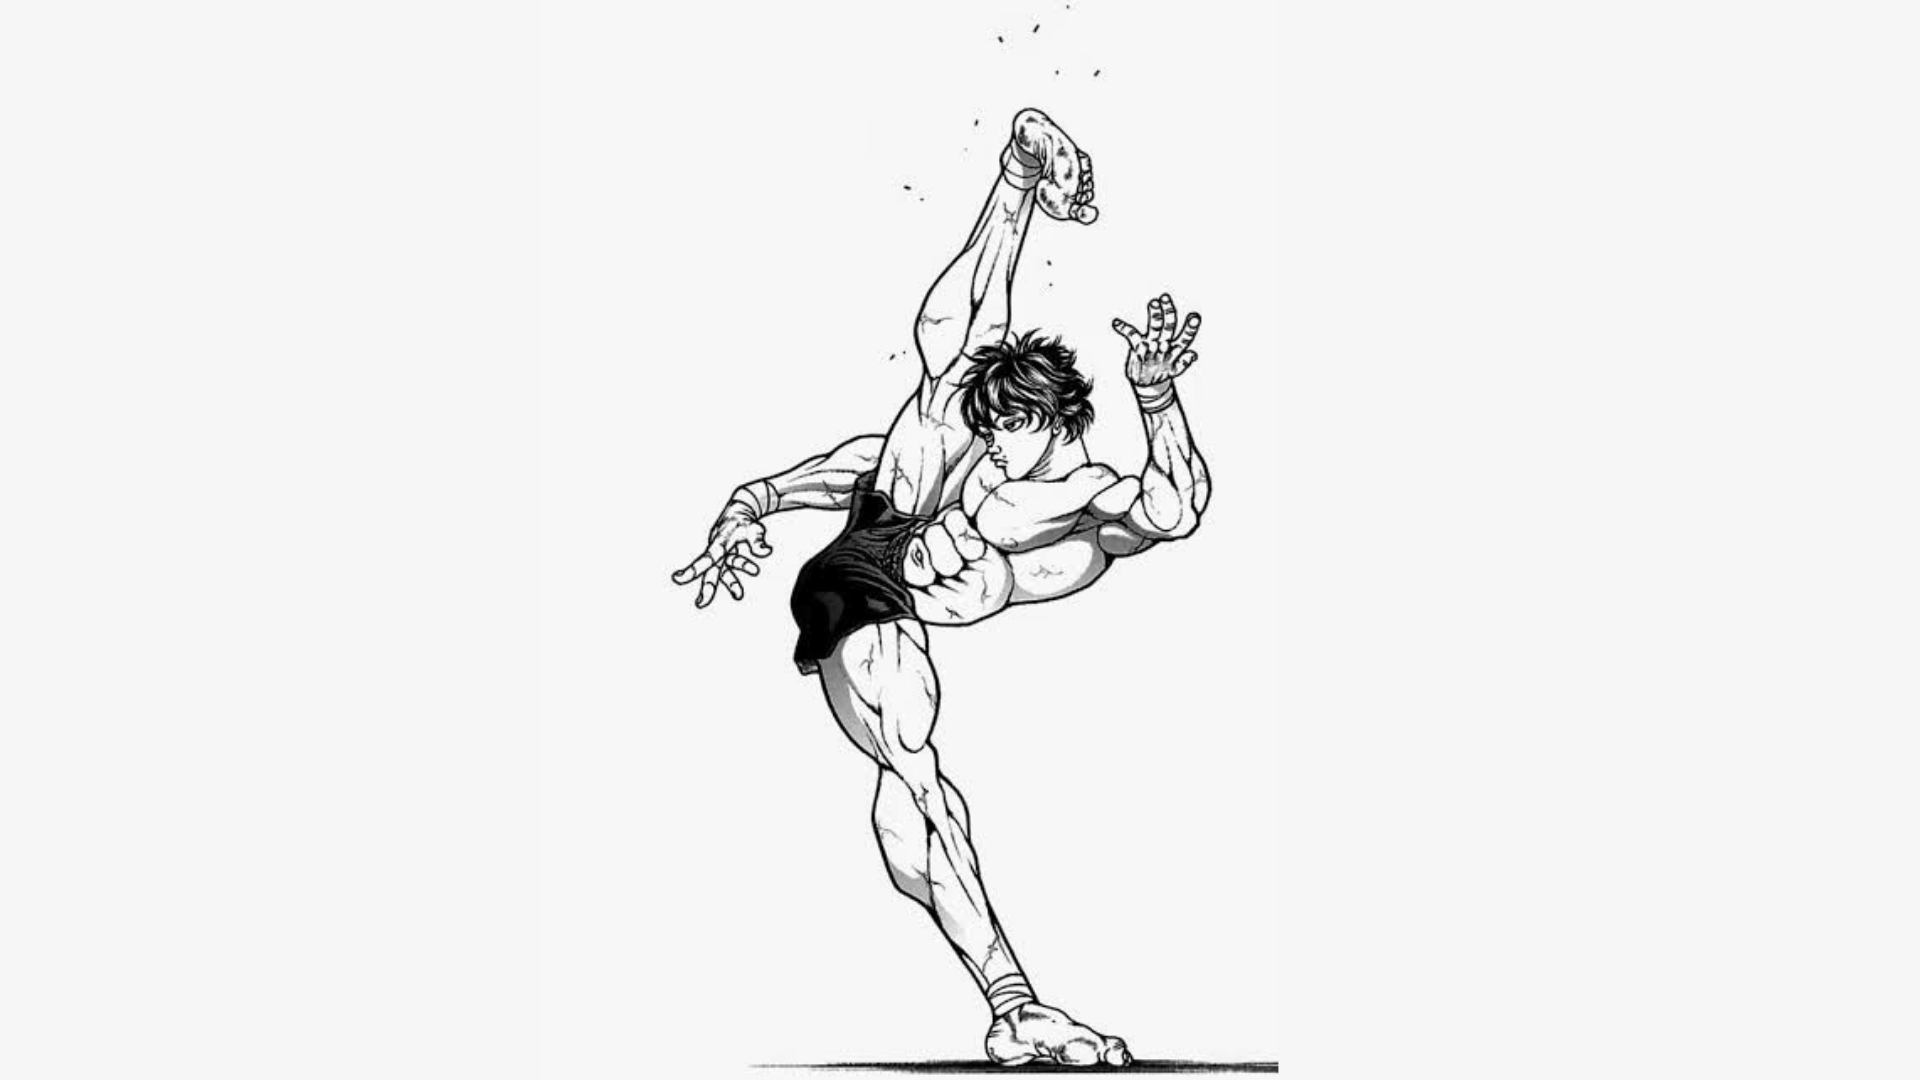 Baki The Grappler Baki Hanma Anime Boys Manga 1920x1080